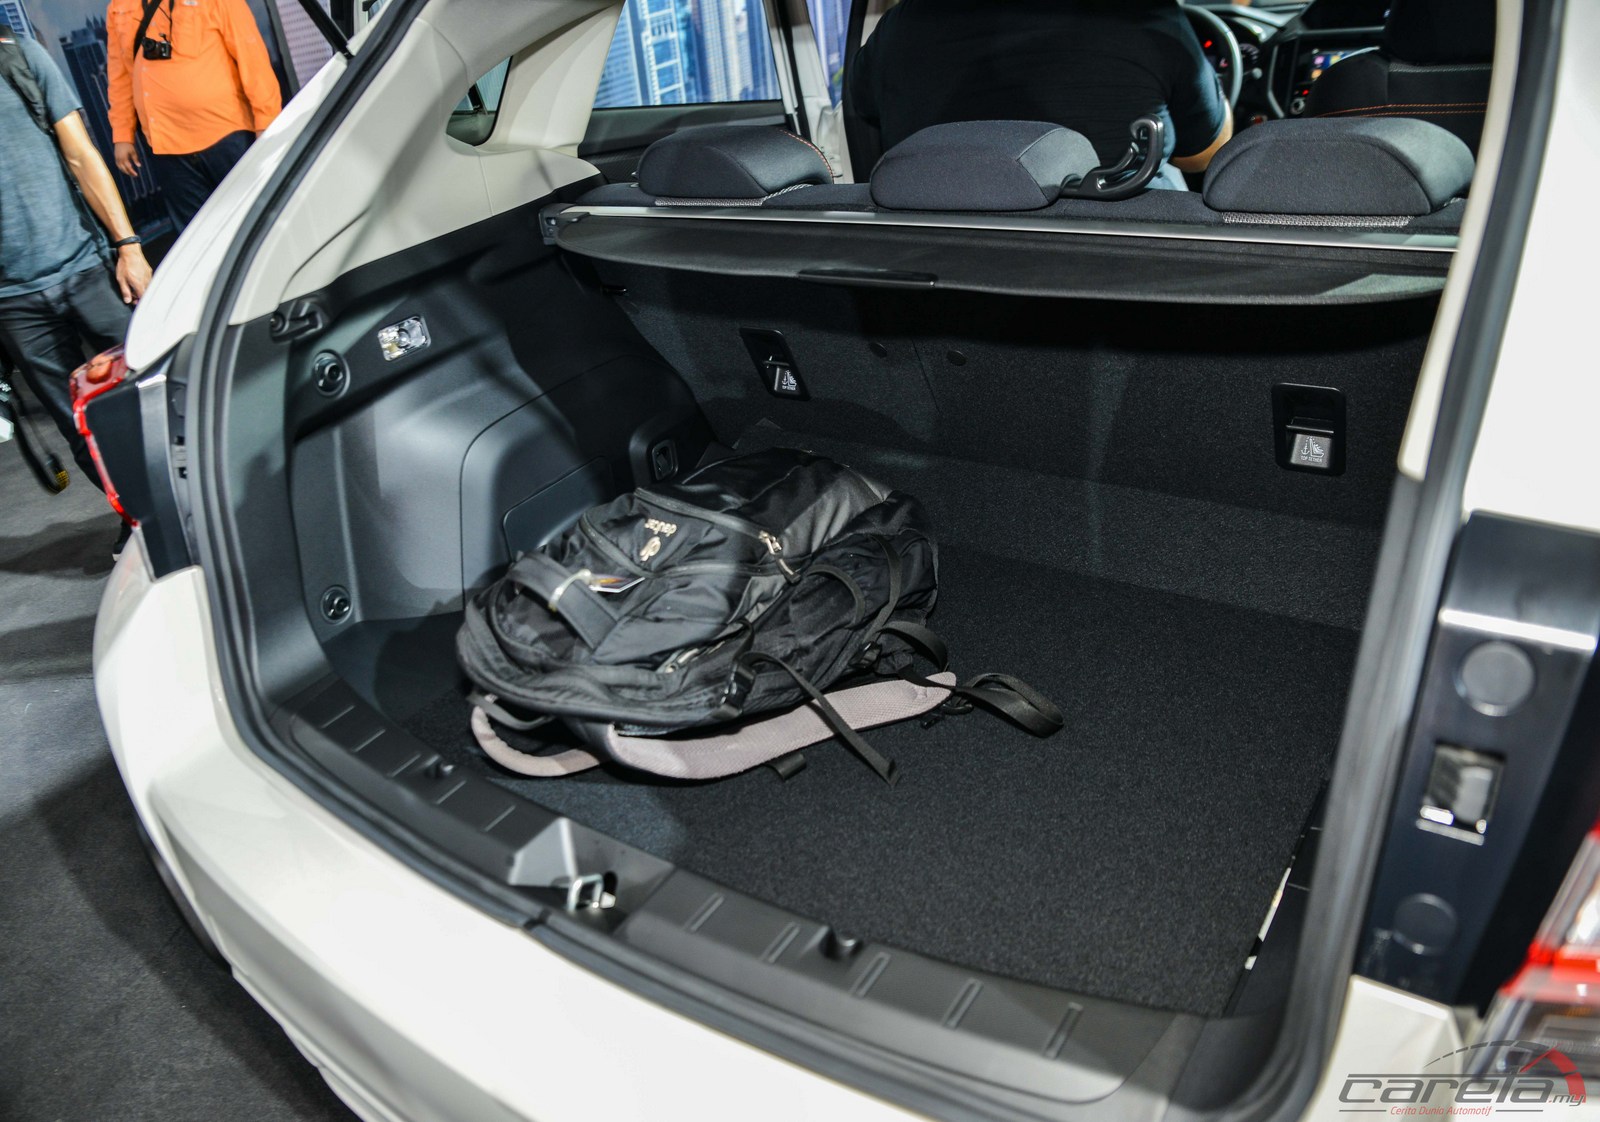 Subaru XV 2017 boot